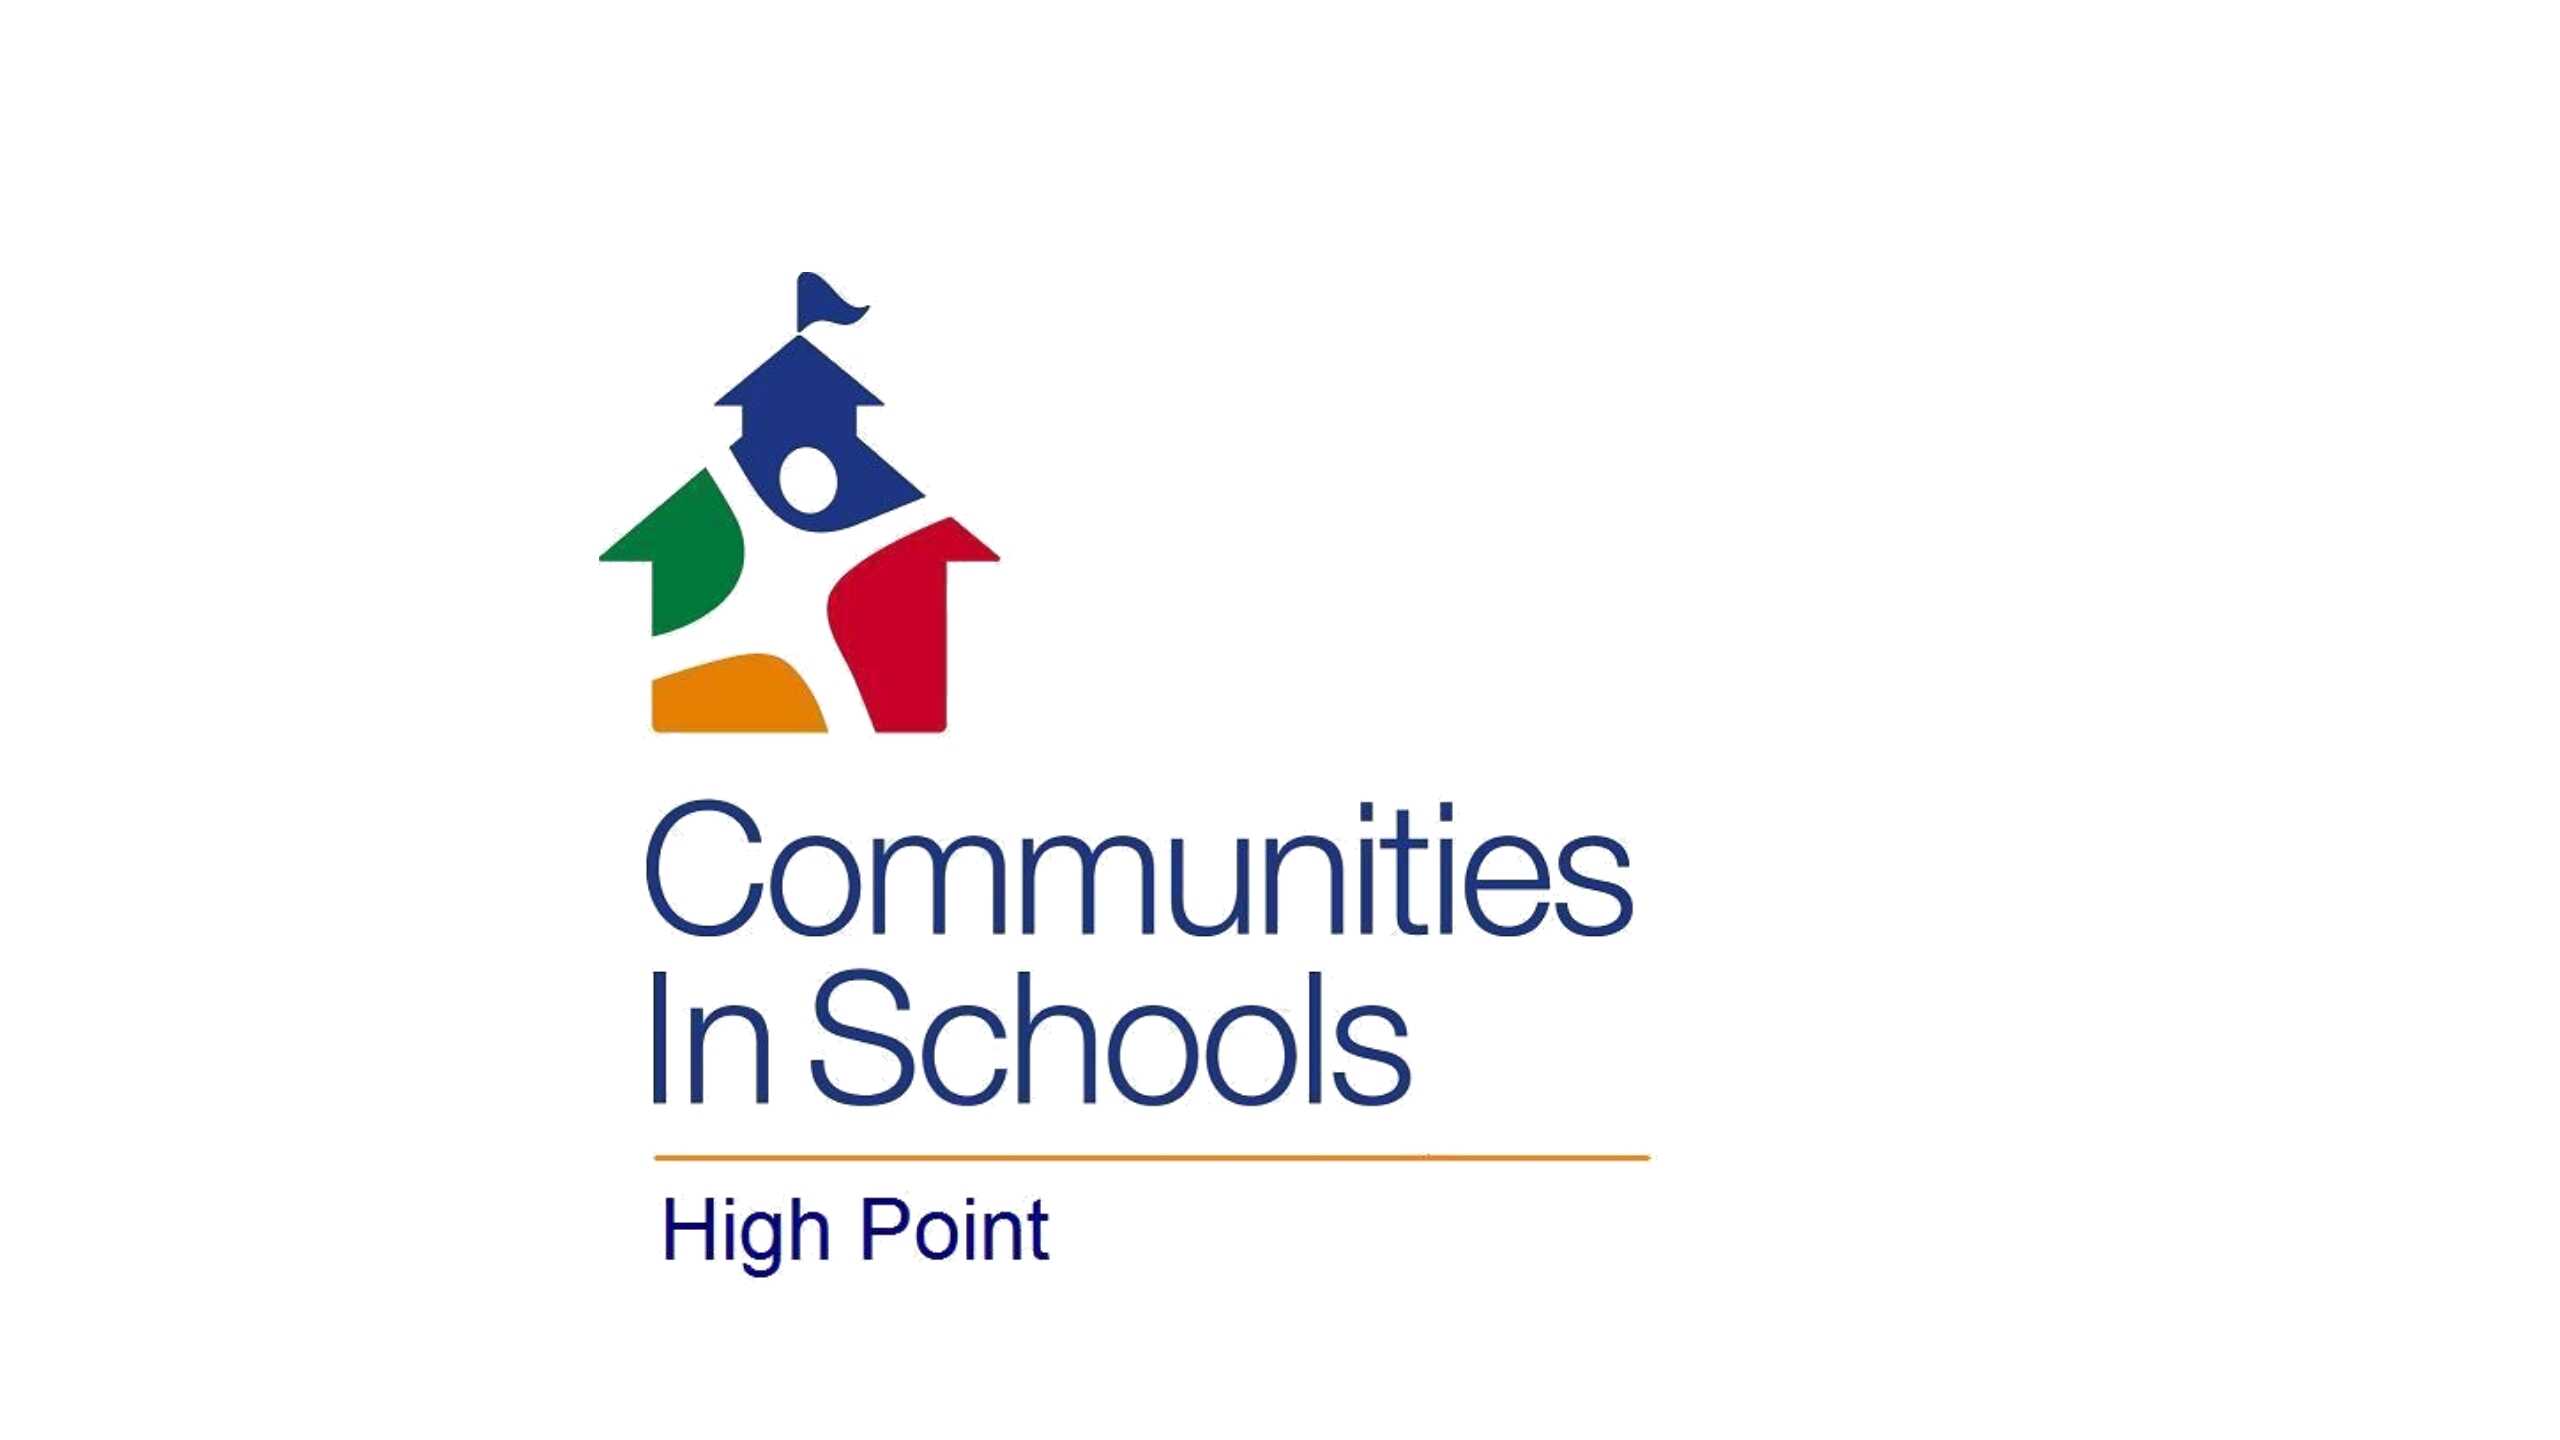 Communities in Schools - High Point